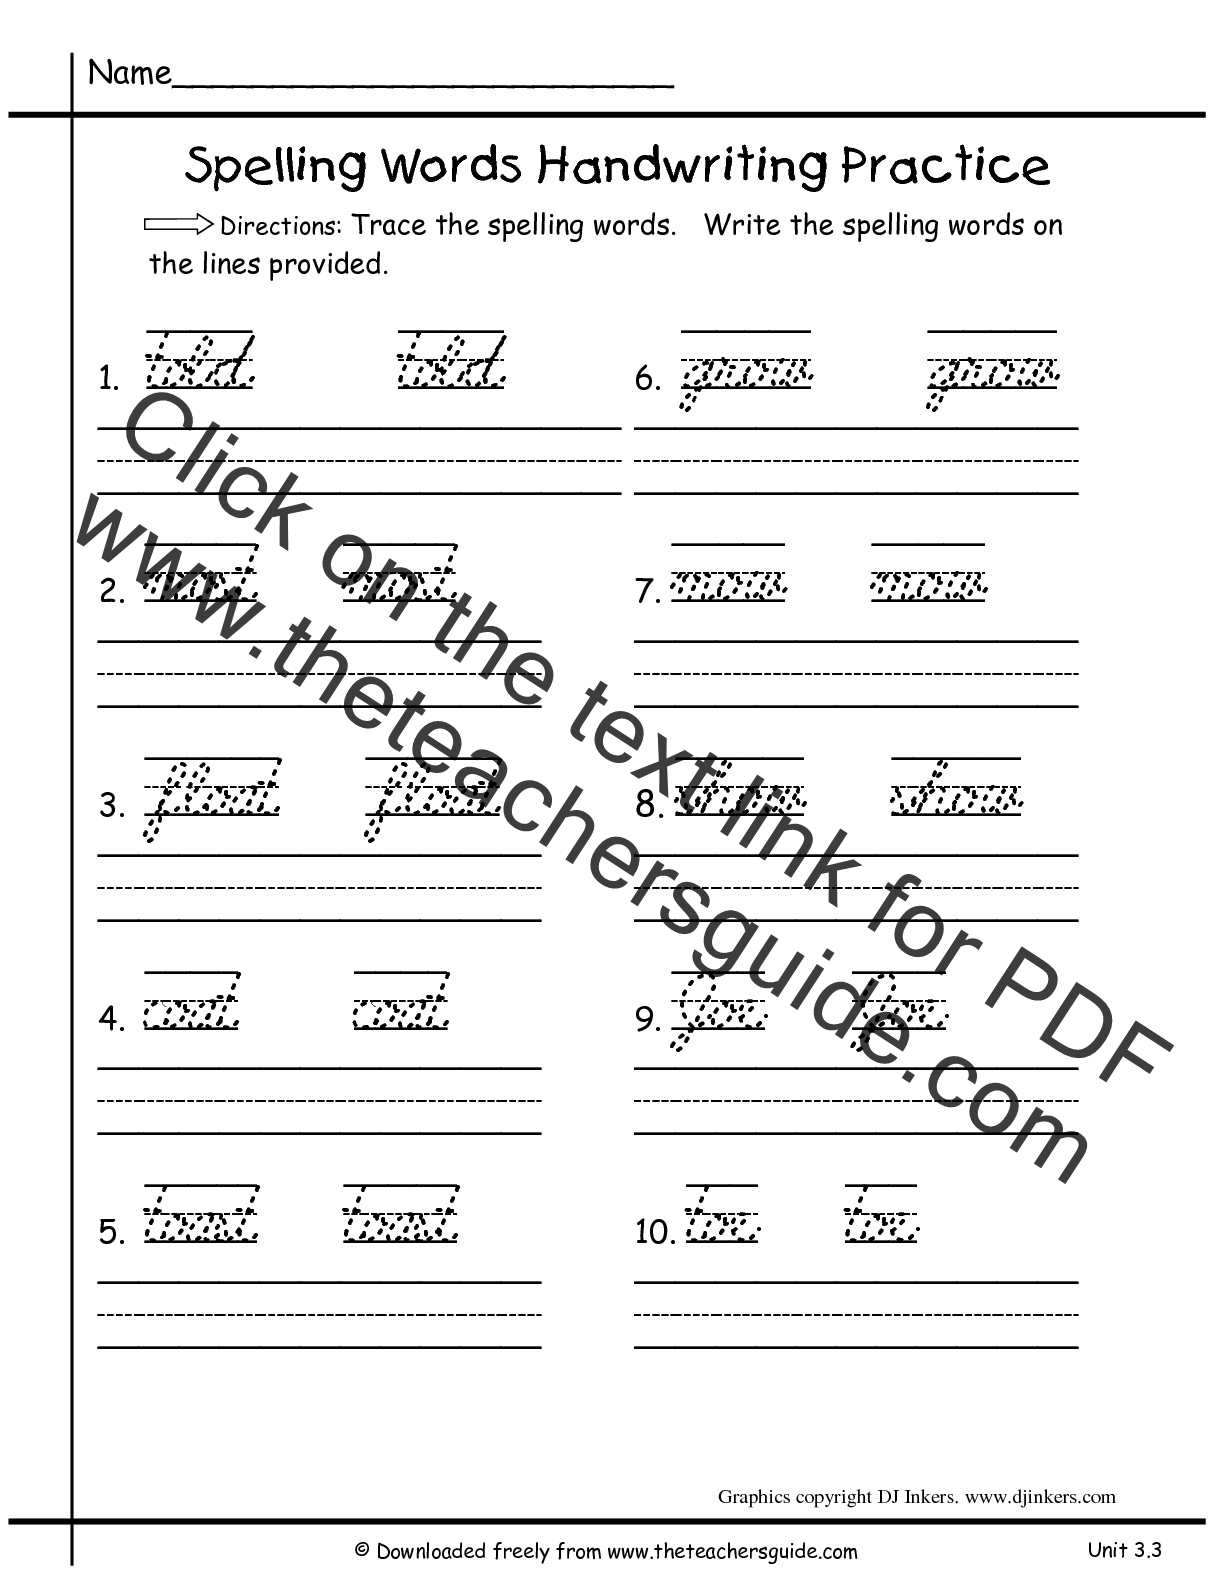 Handwriting Practice Worksheet by DJ Inkers